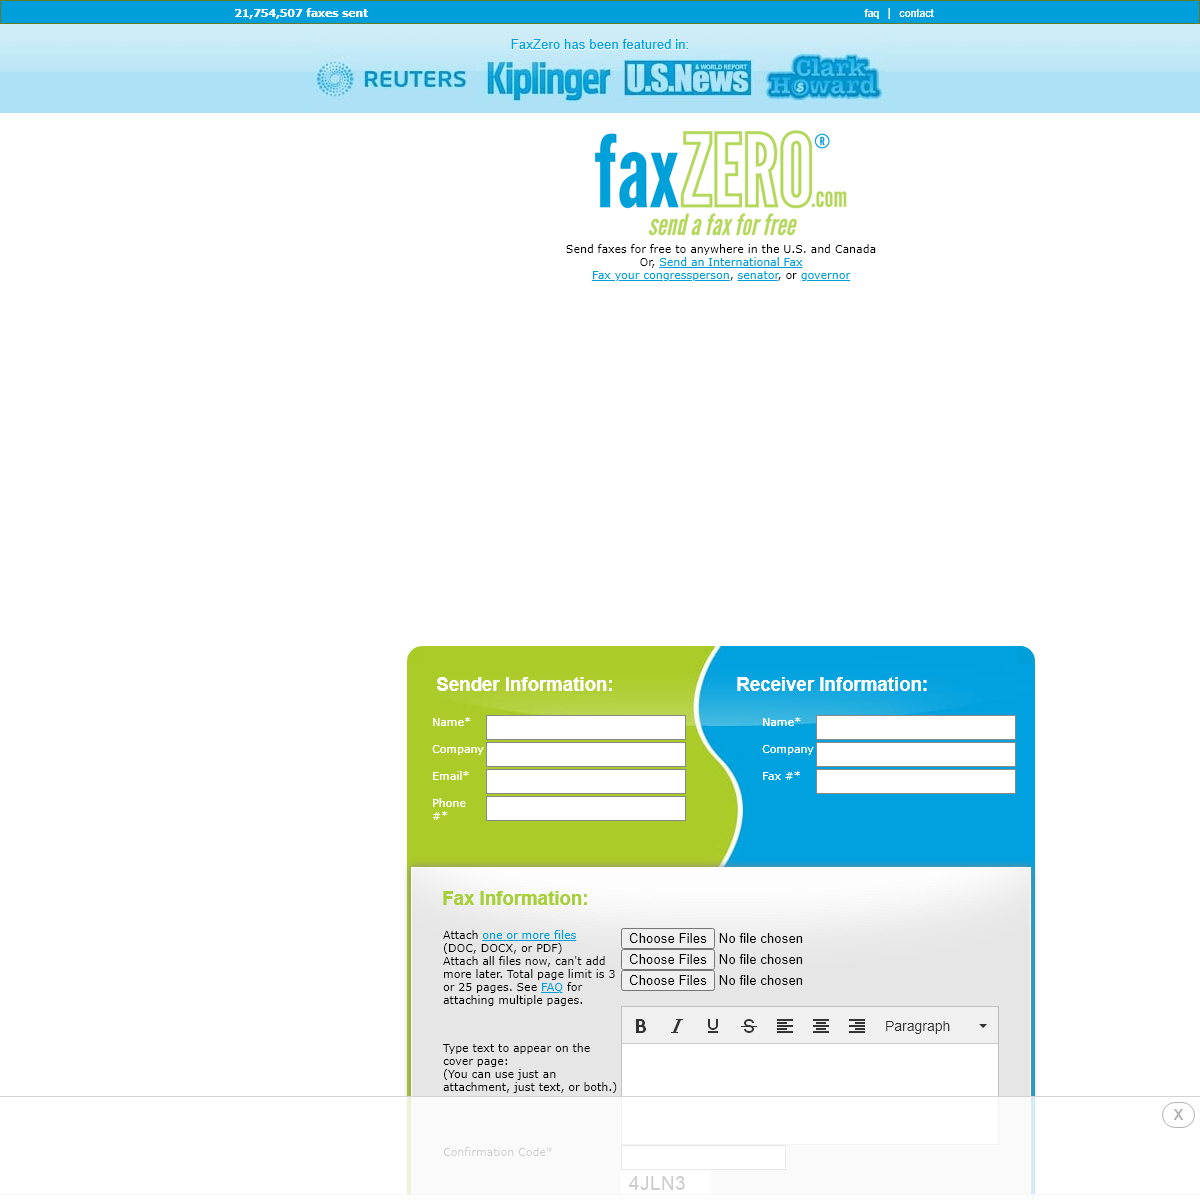 A complete backup of faxzero.com